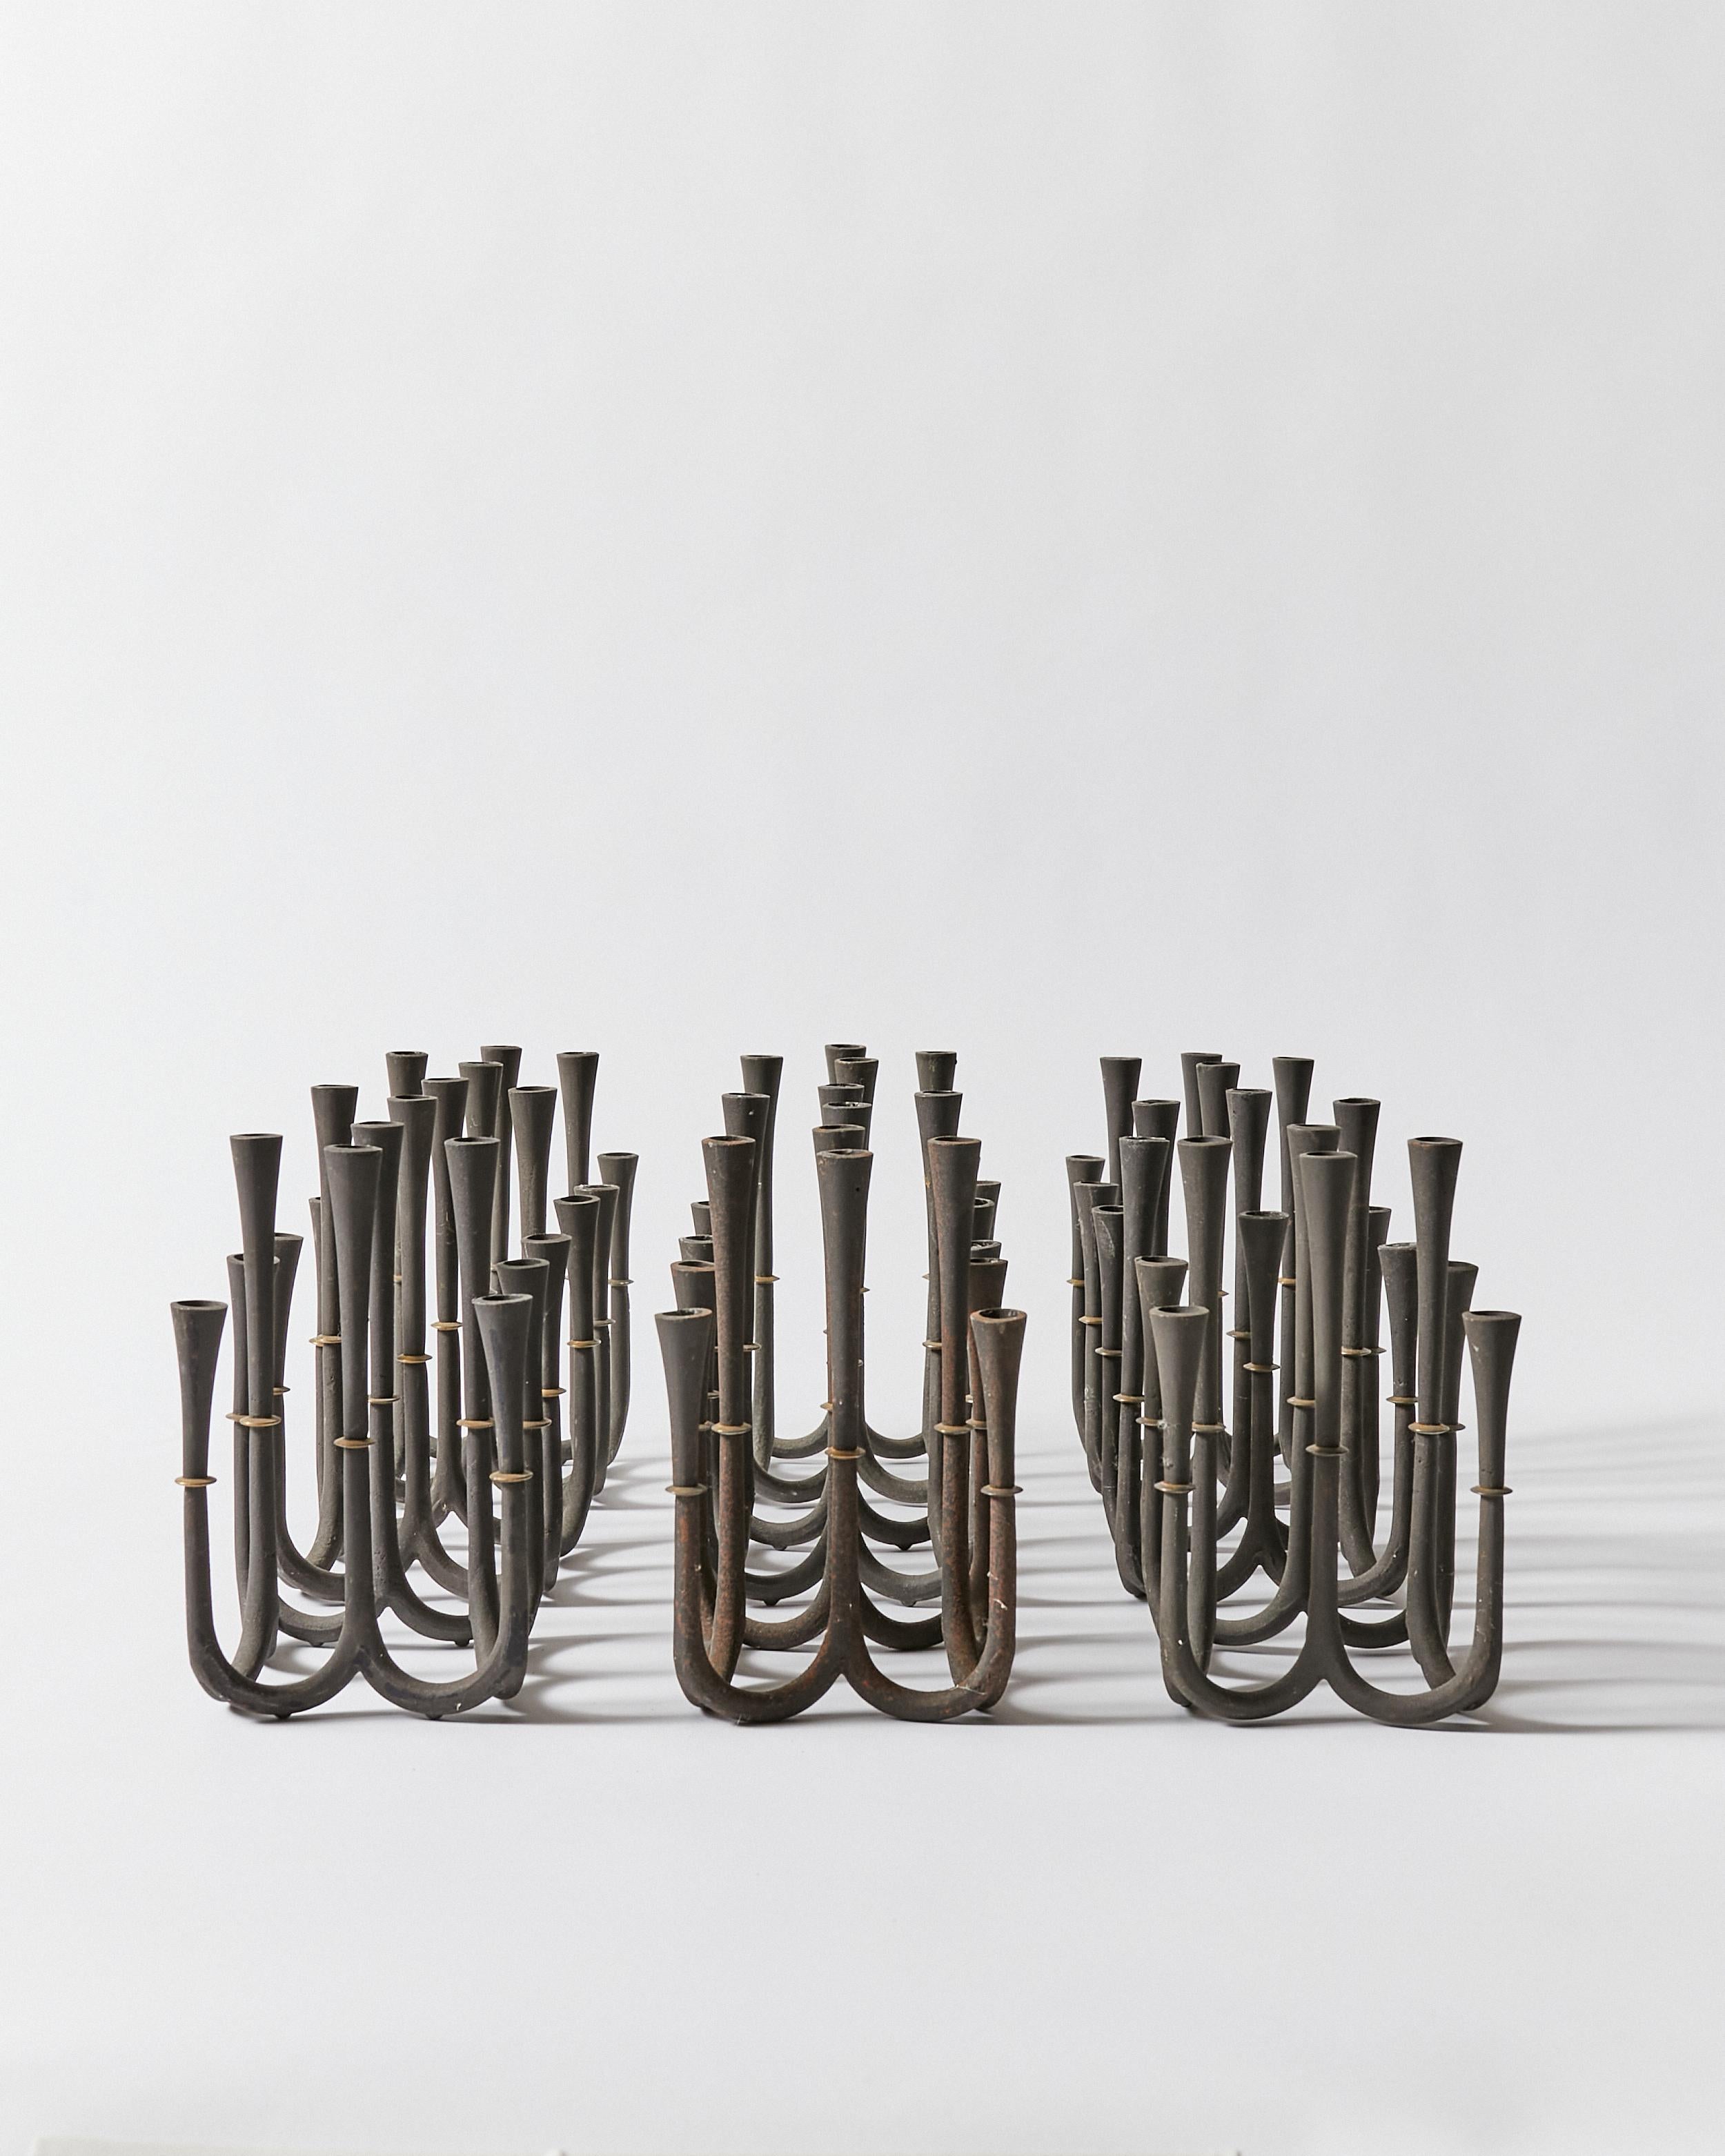 Set of nine candle holders by Jens Harald Quistgaard for Dansk Designs, Denmark.